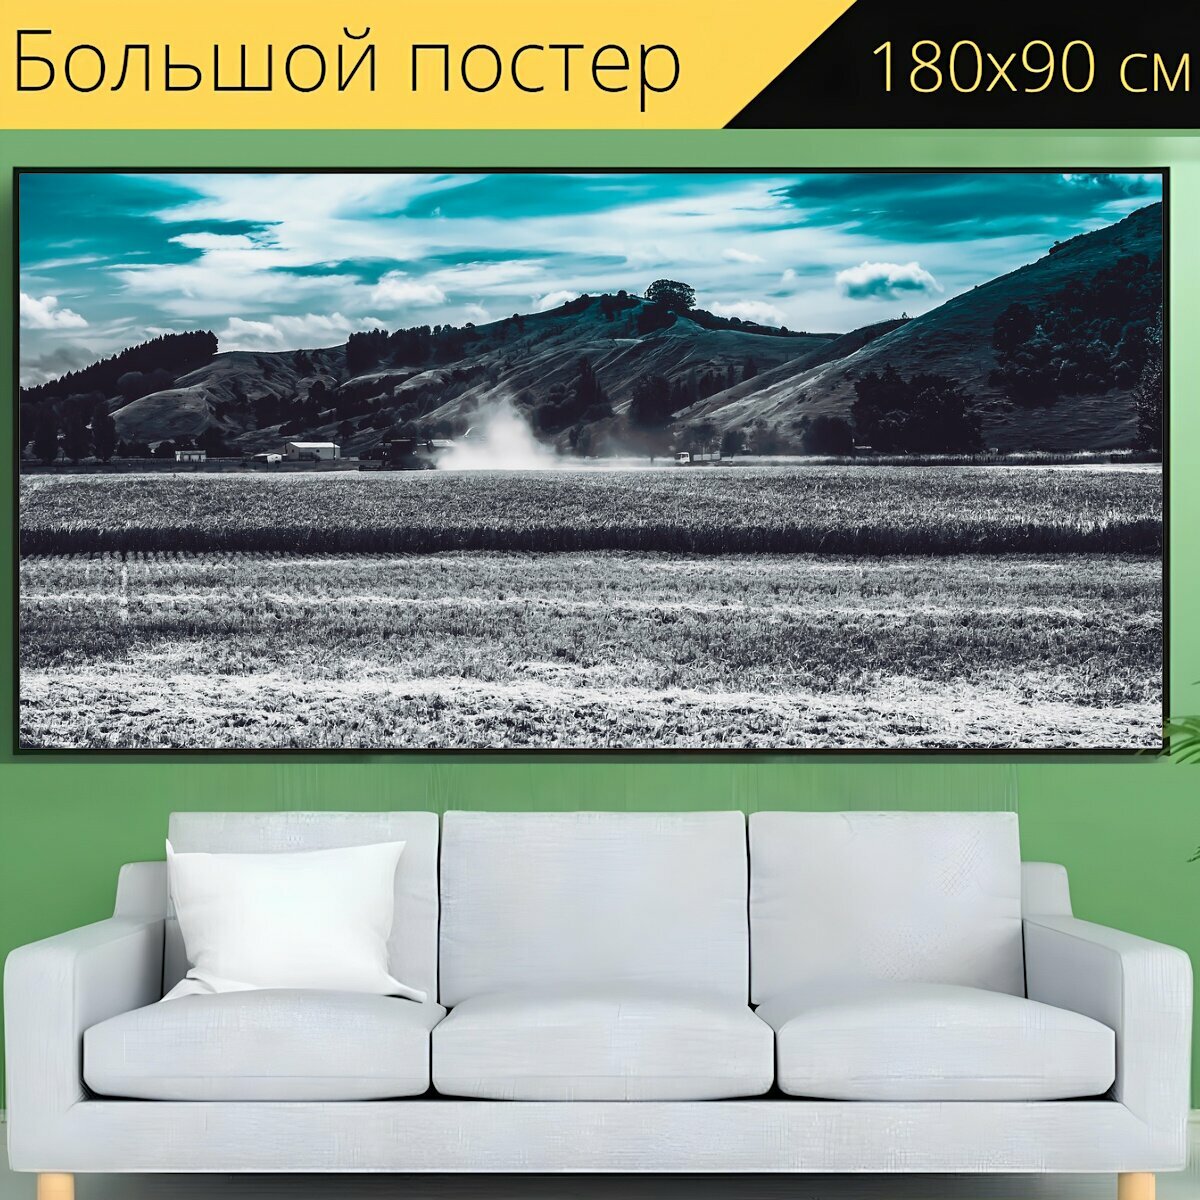 Большой постер "Небо, гора, природа" 180 x 90 см. для интерьера